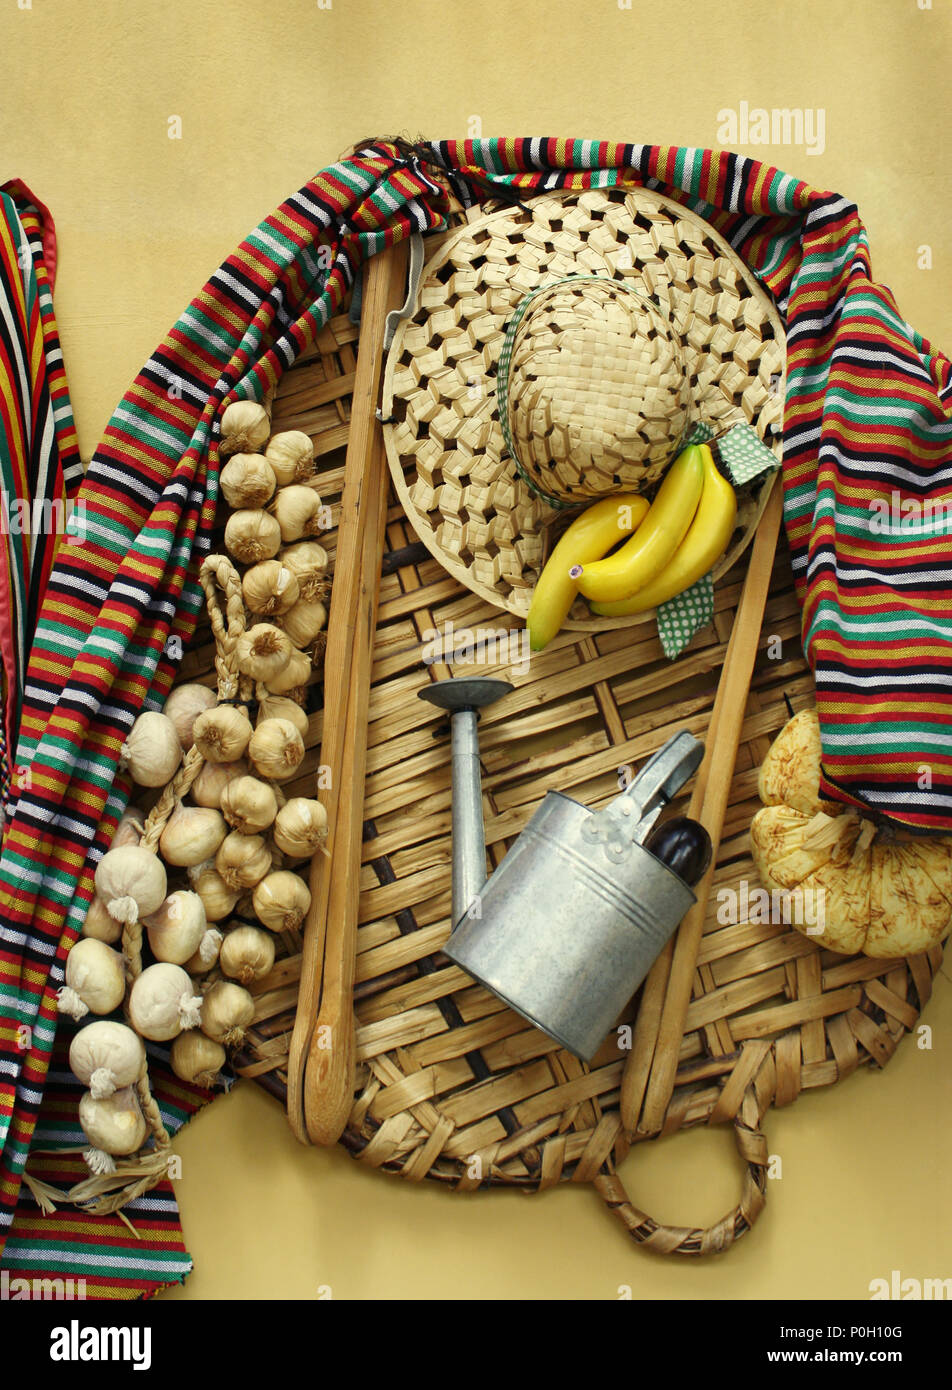 La composition d'objets folkloriques et des aliments utilisés par les agriculteurs dans les îles Canaries Banque D'Images